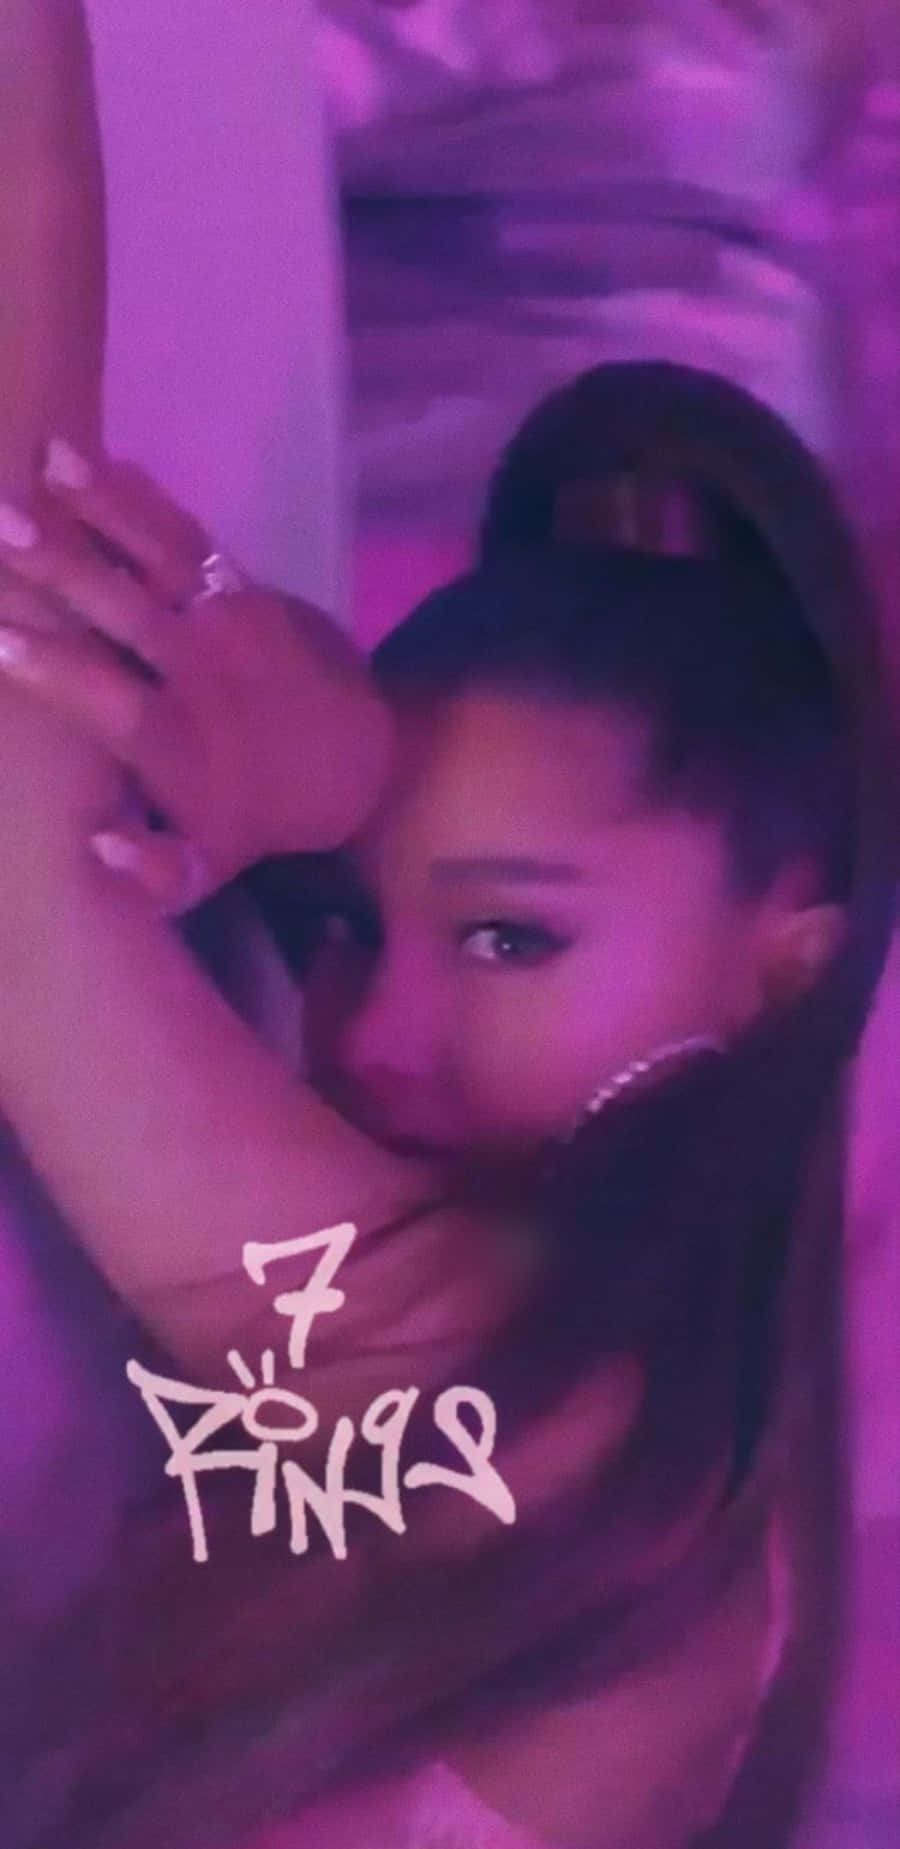 Ariana Grande 7 Rings Music Video Wallpaper